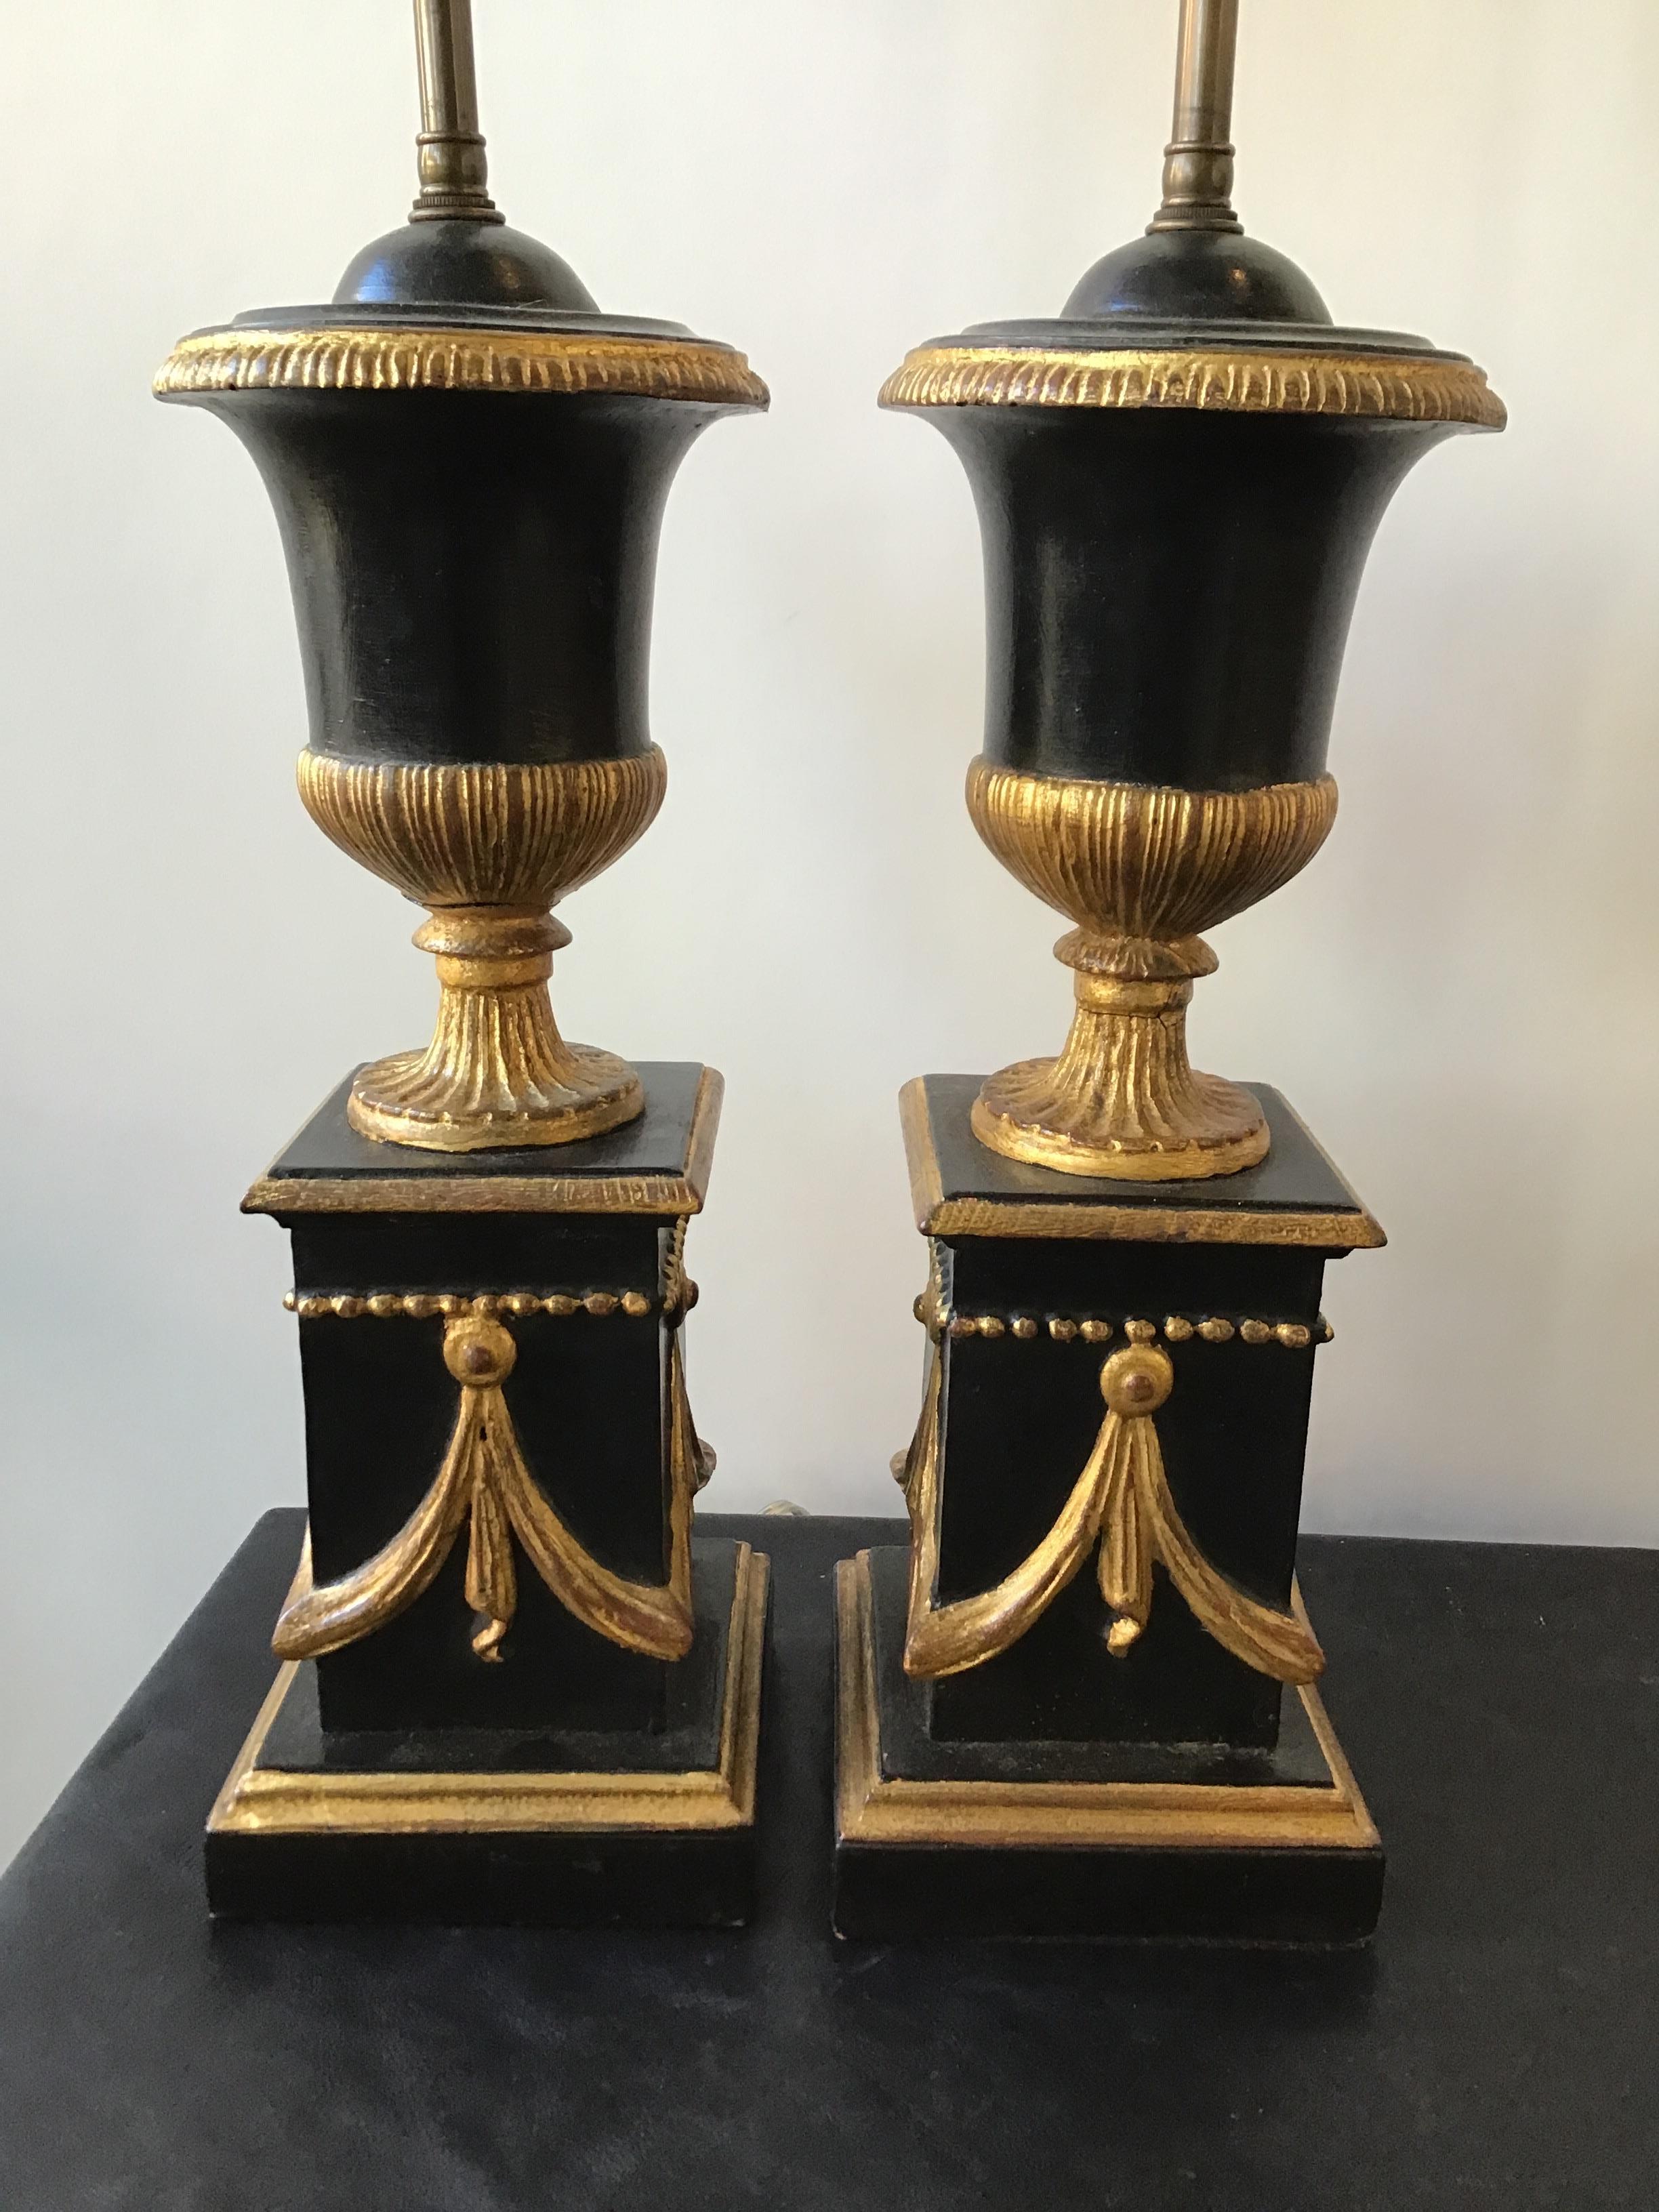 Paire de lampes-urnes italiennes en bois doré des années 1920.